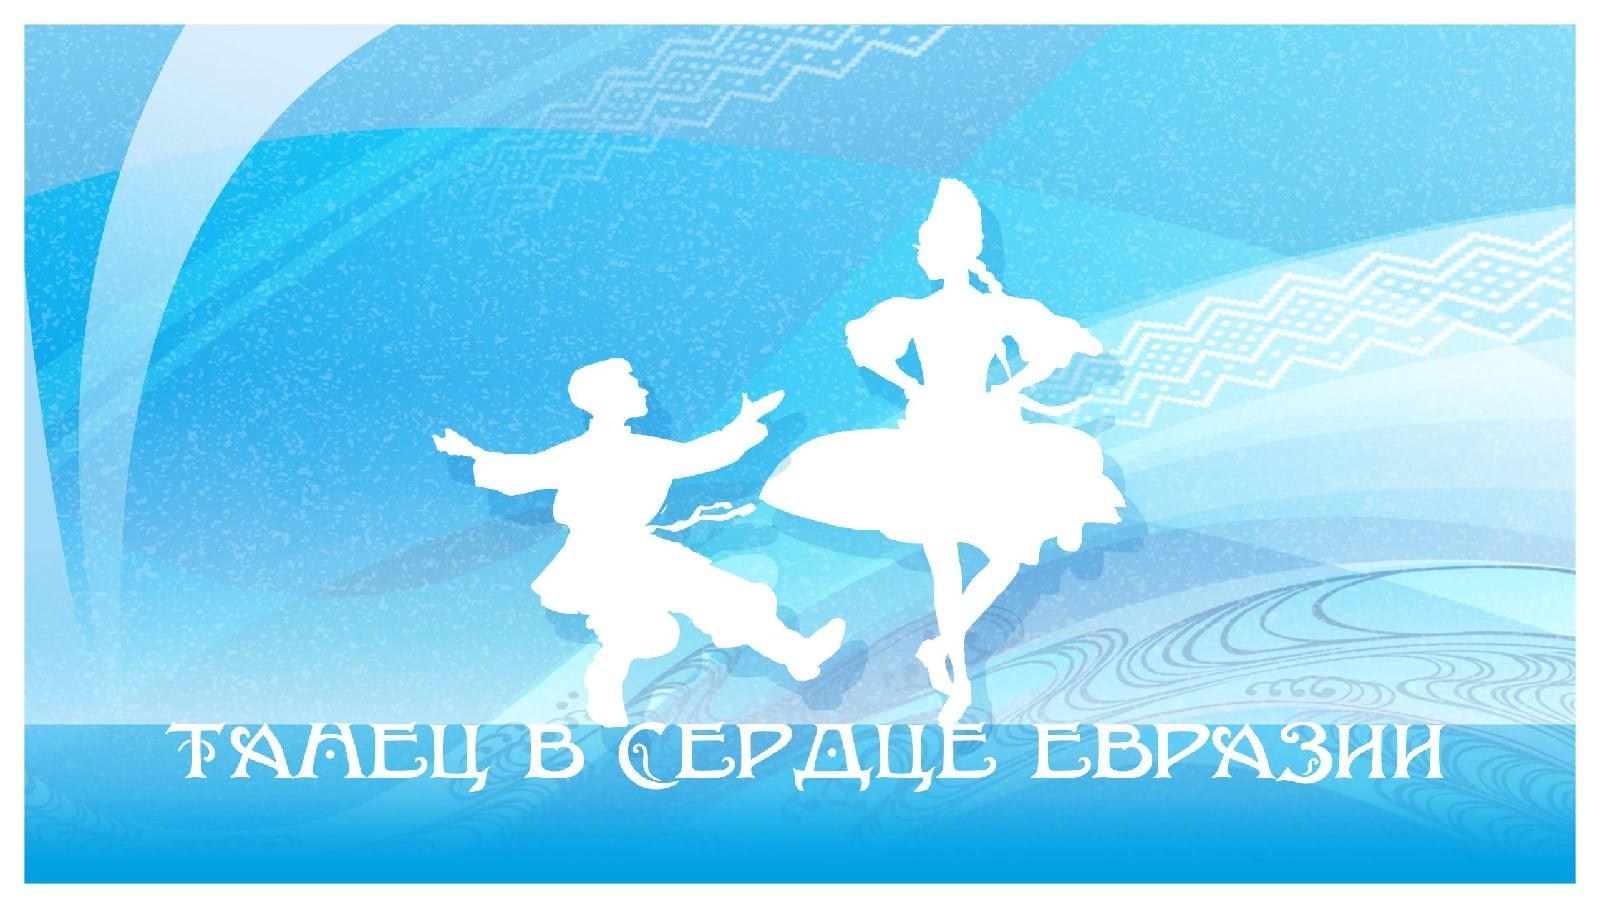 Более 100 хореографов Оренбуржья стали участниками проекта «Танец в сердце Евразии»